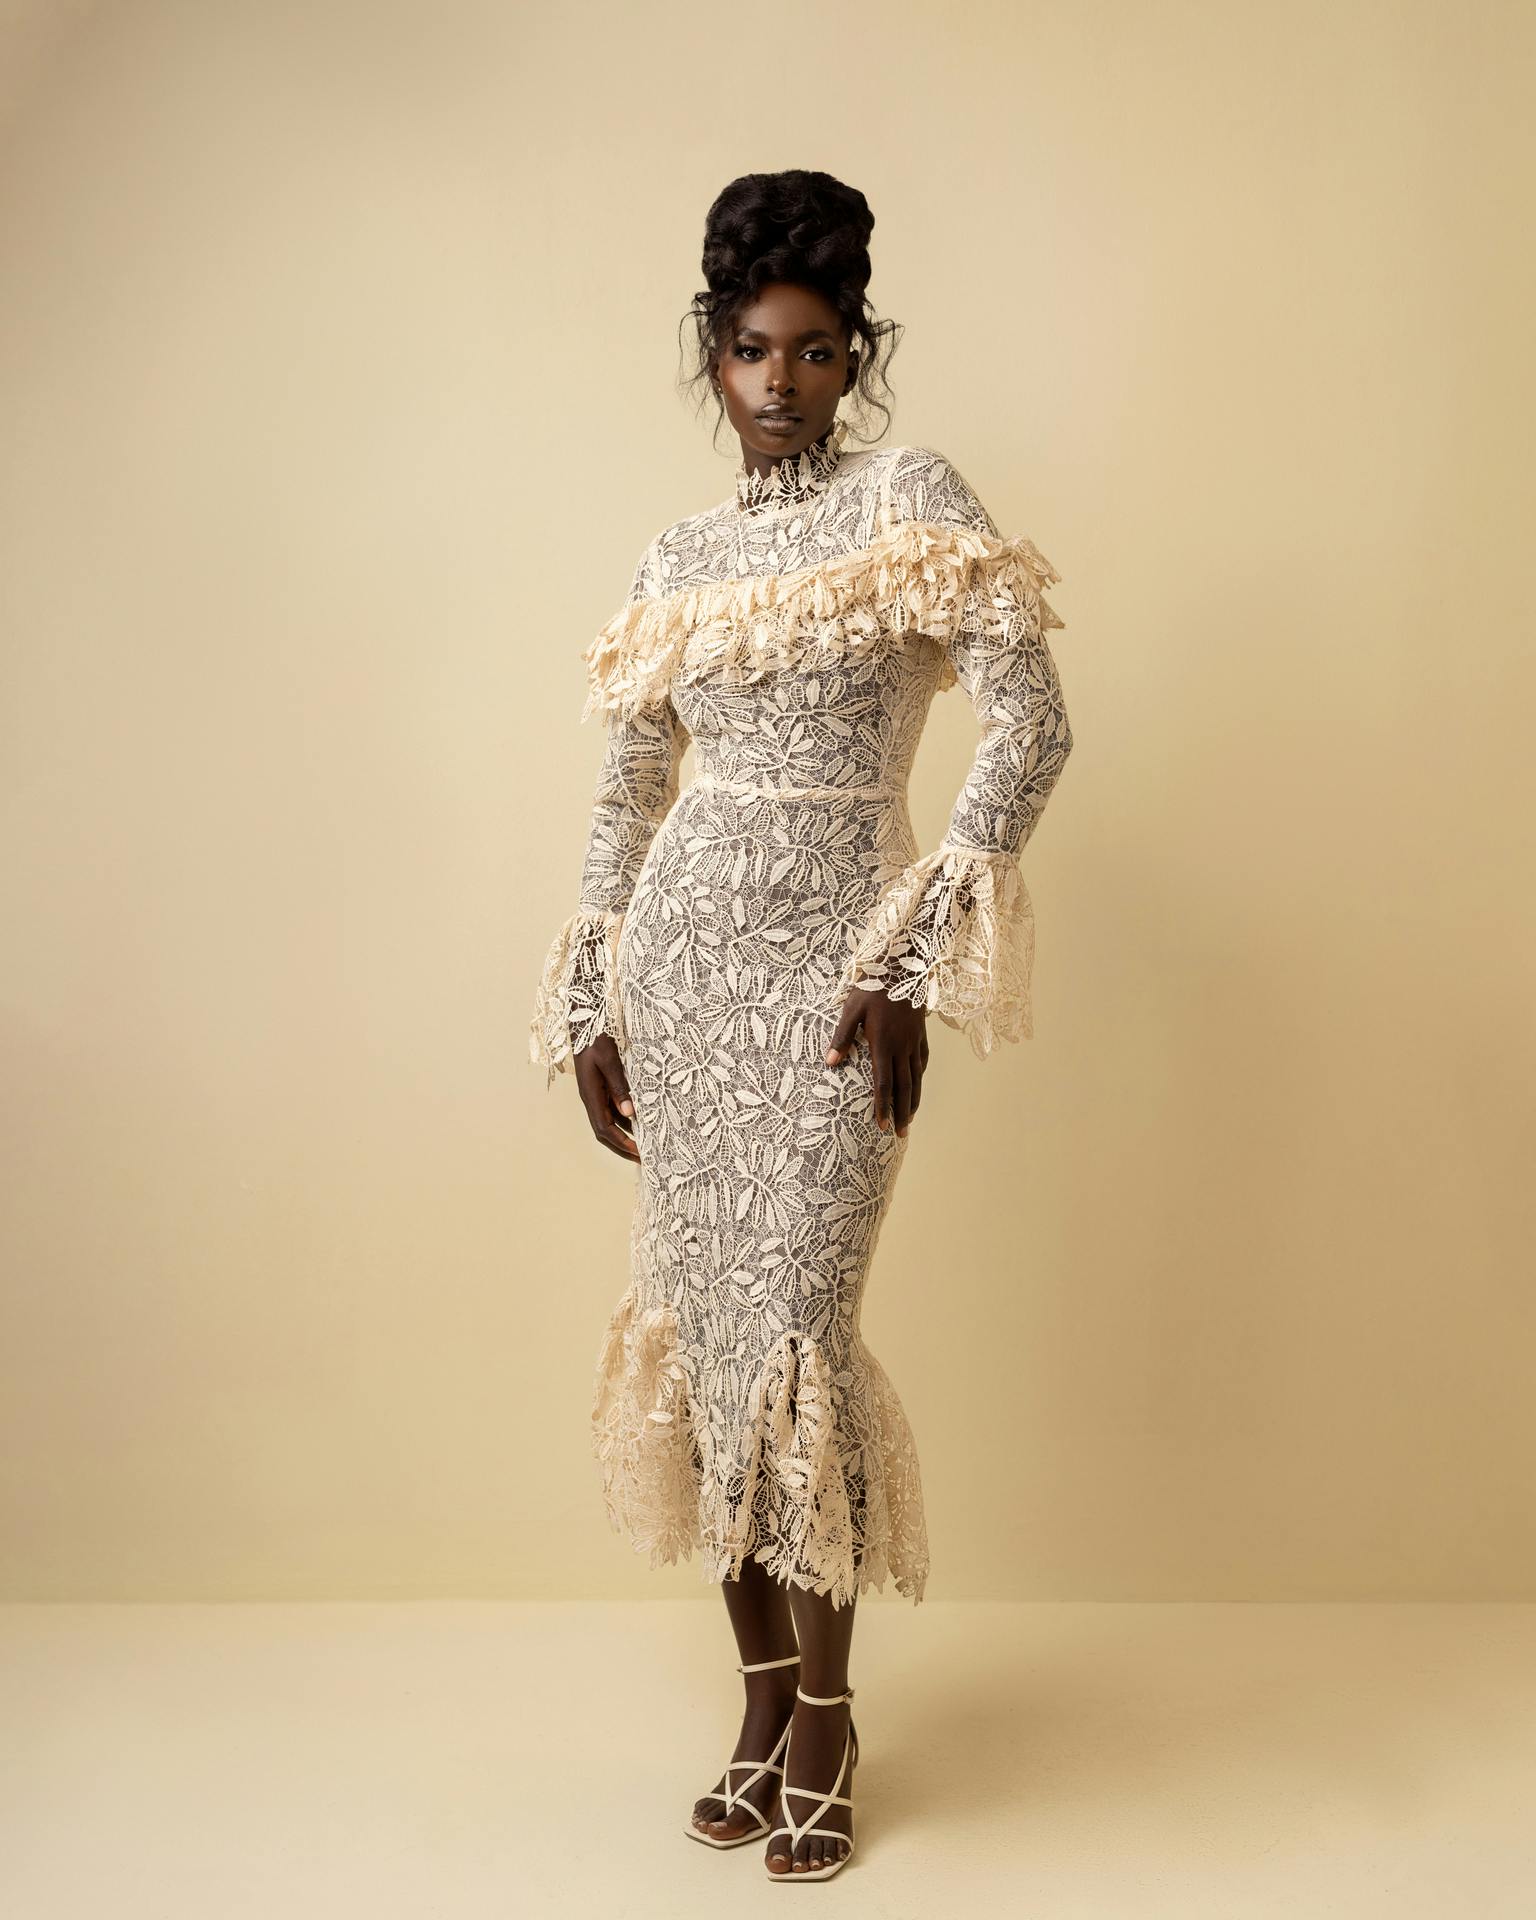 Tife Dress, a product by Knanfe Fashion